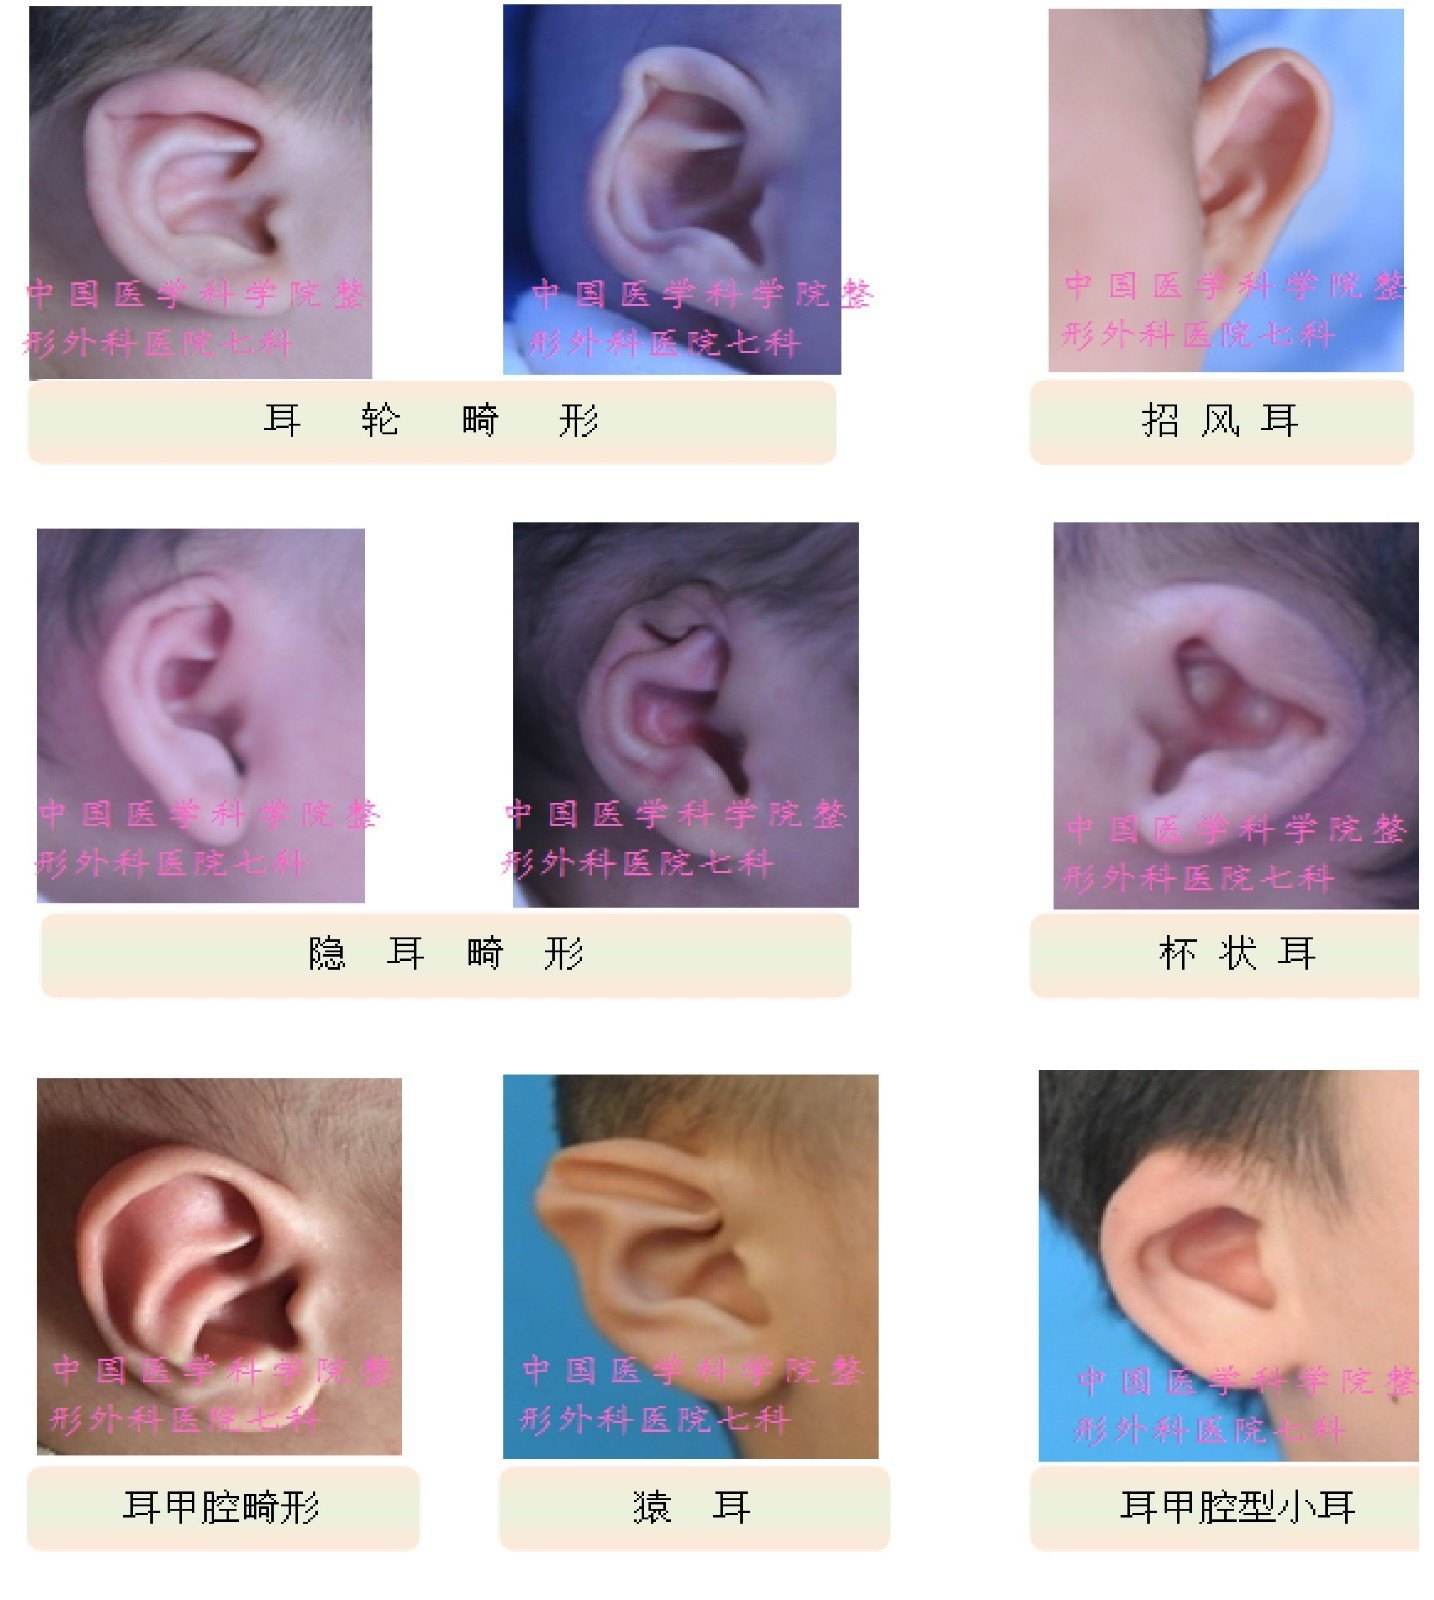 二、外耳道-人体解剖学与组织胚胎学-医学